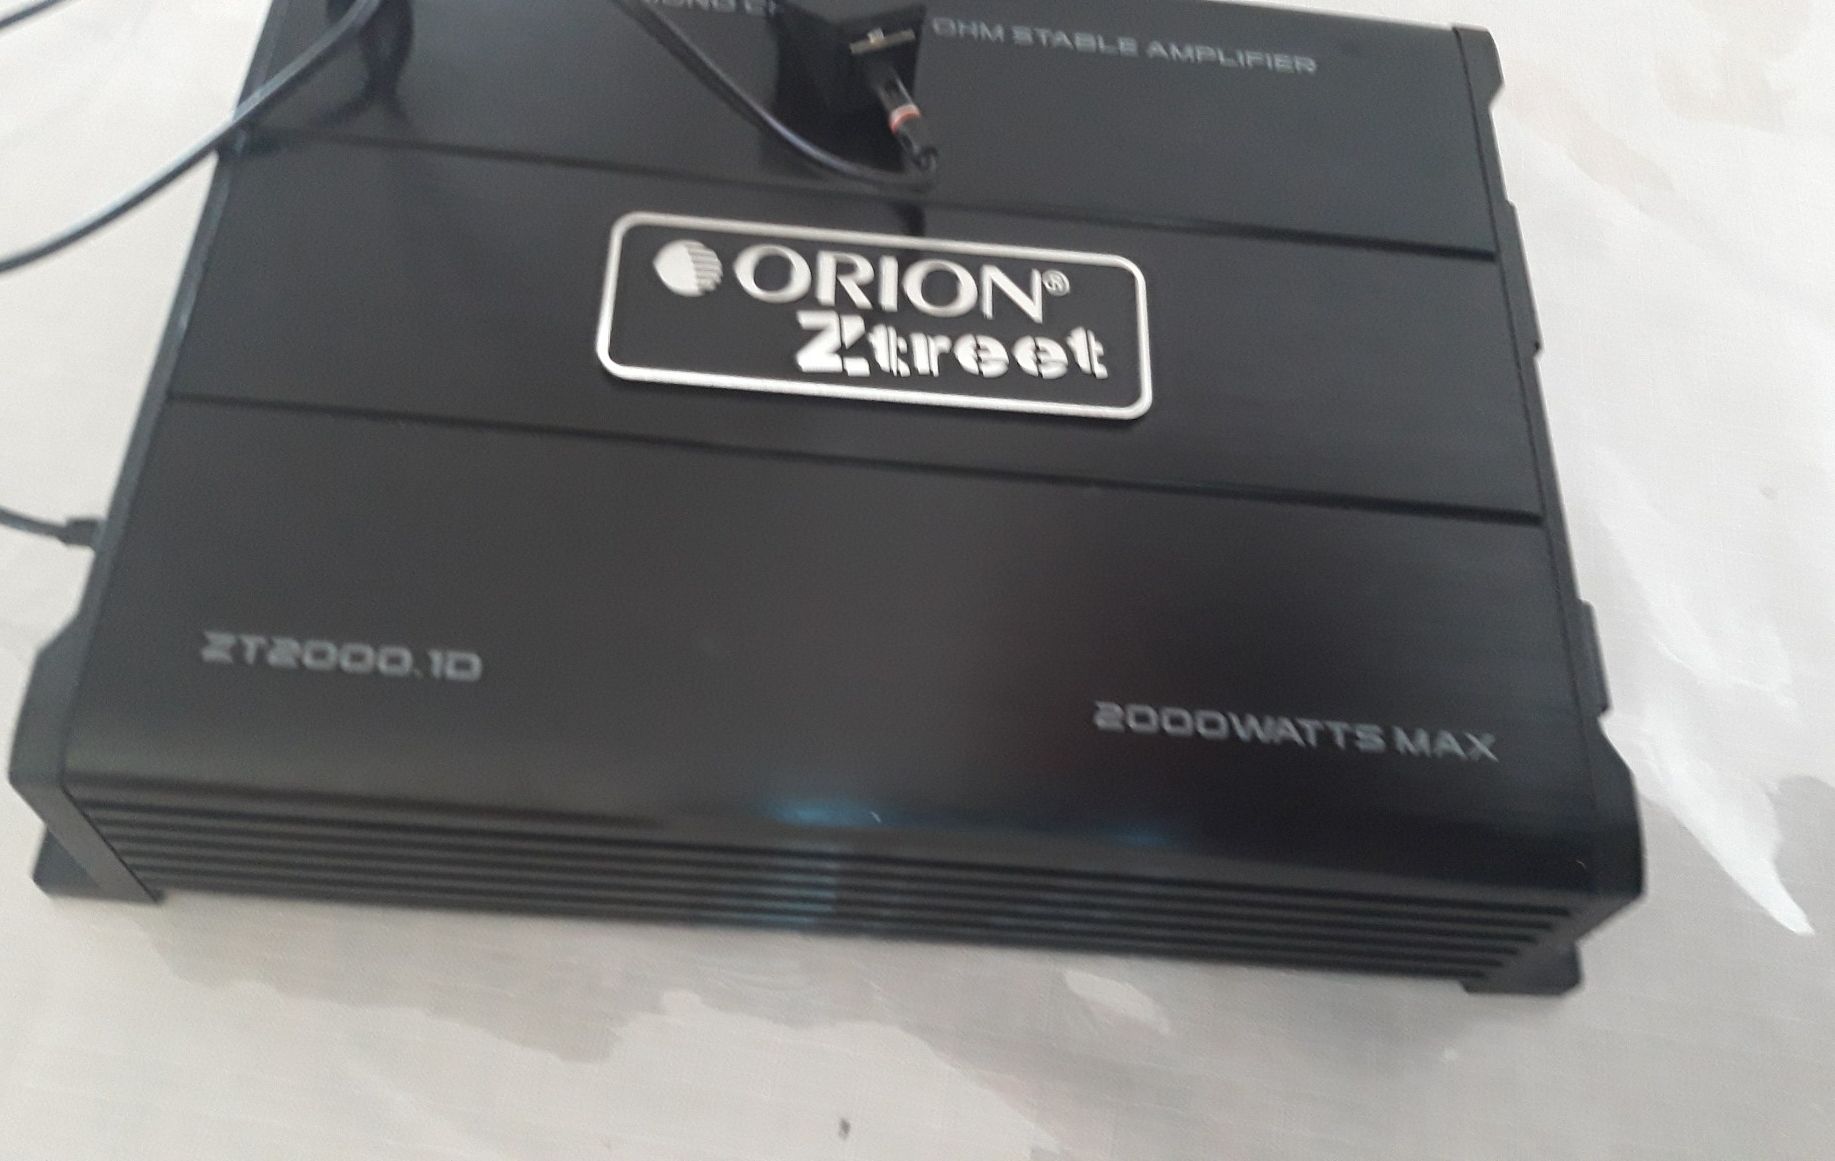 Mono block 1 channel Orion ztreet 2,000 watts